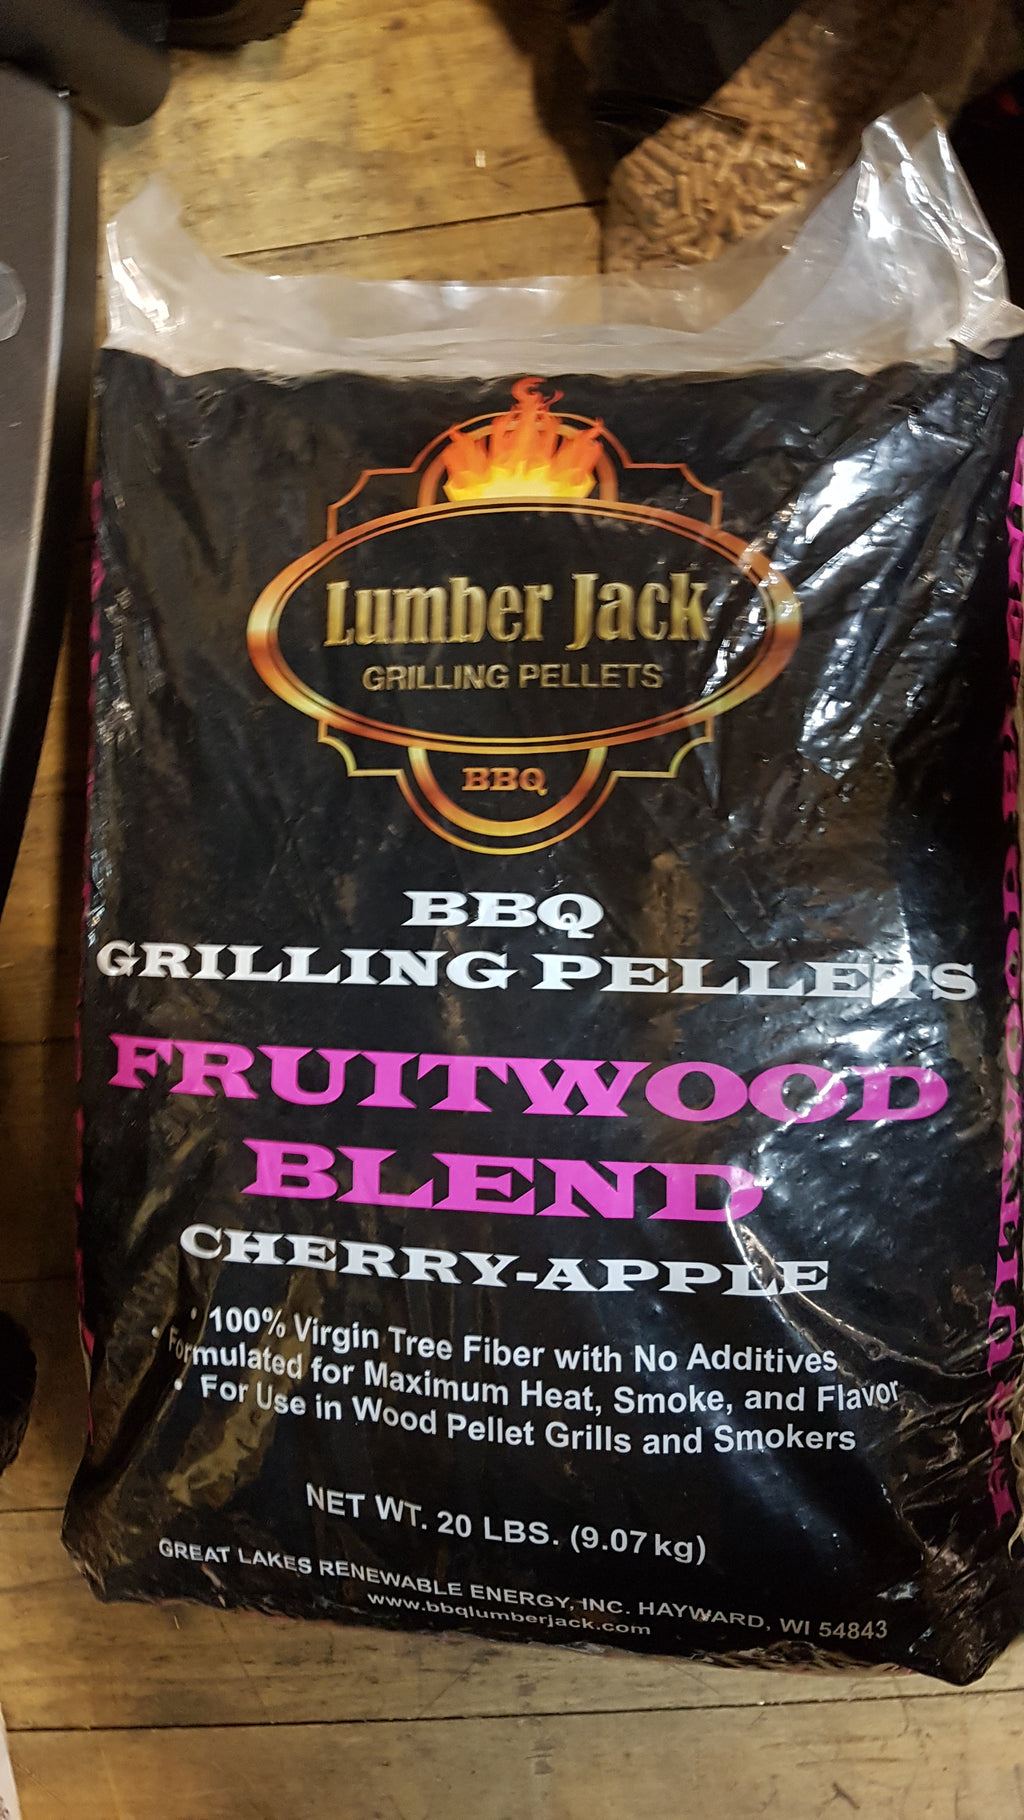 Fruit Wood Blend Grilling Pellets by Lumber Jack